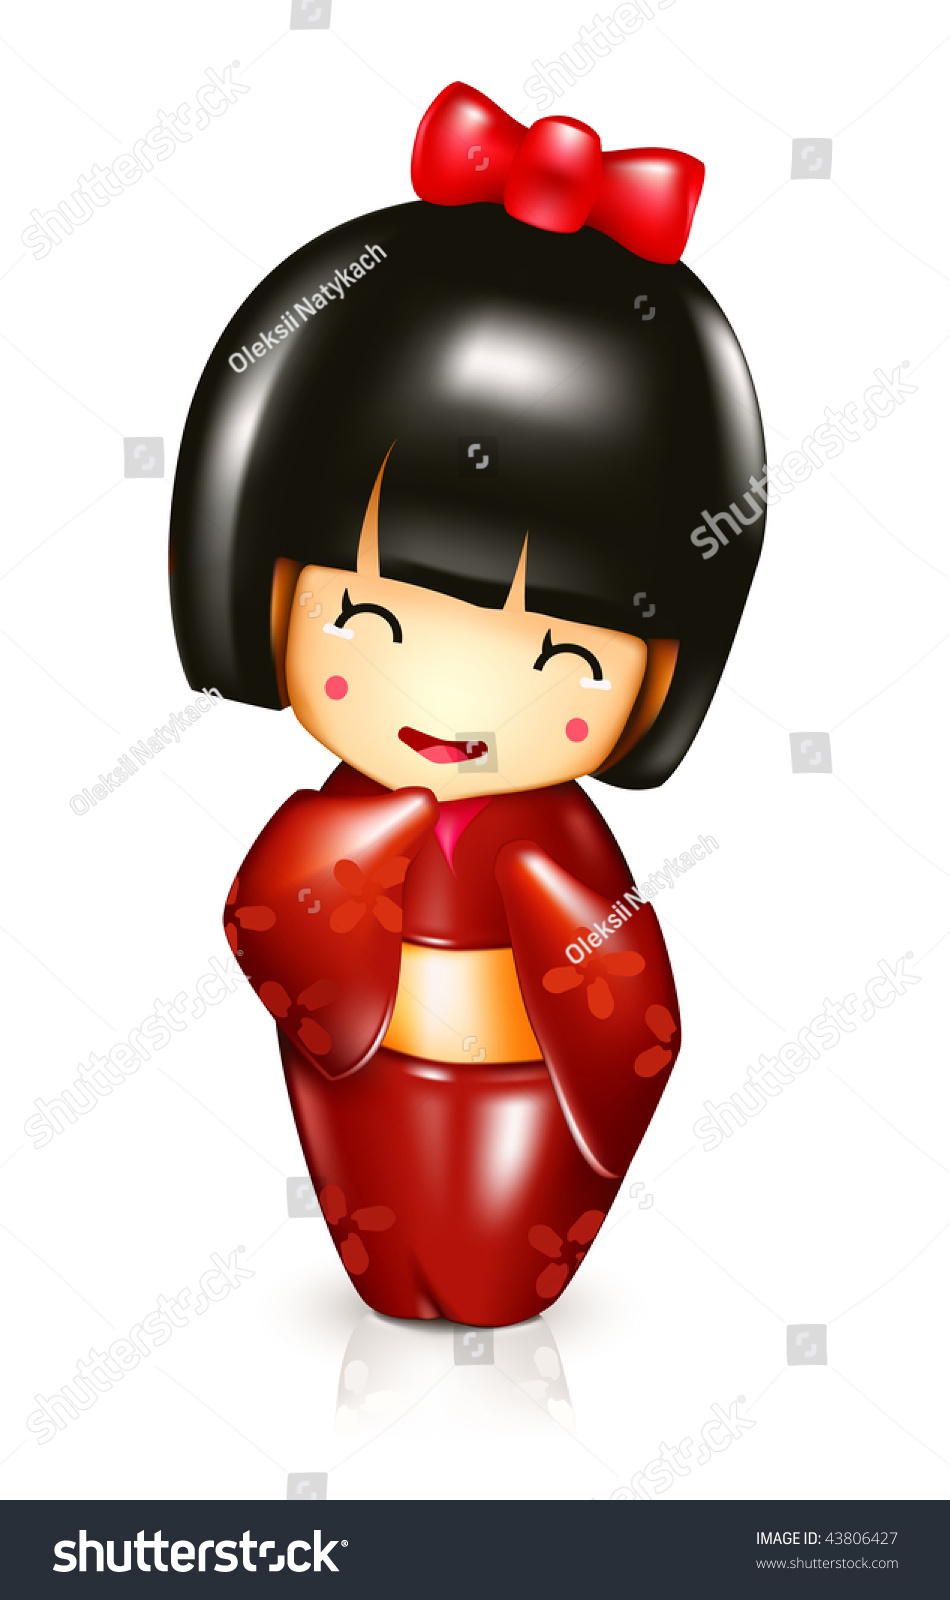 Japanese Doll Vector Stock Vector 43806427 - Shutterstock